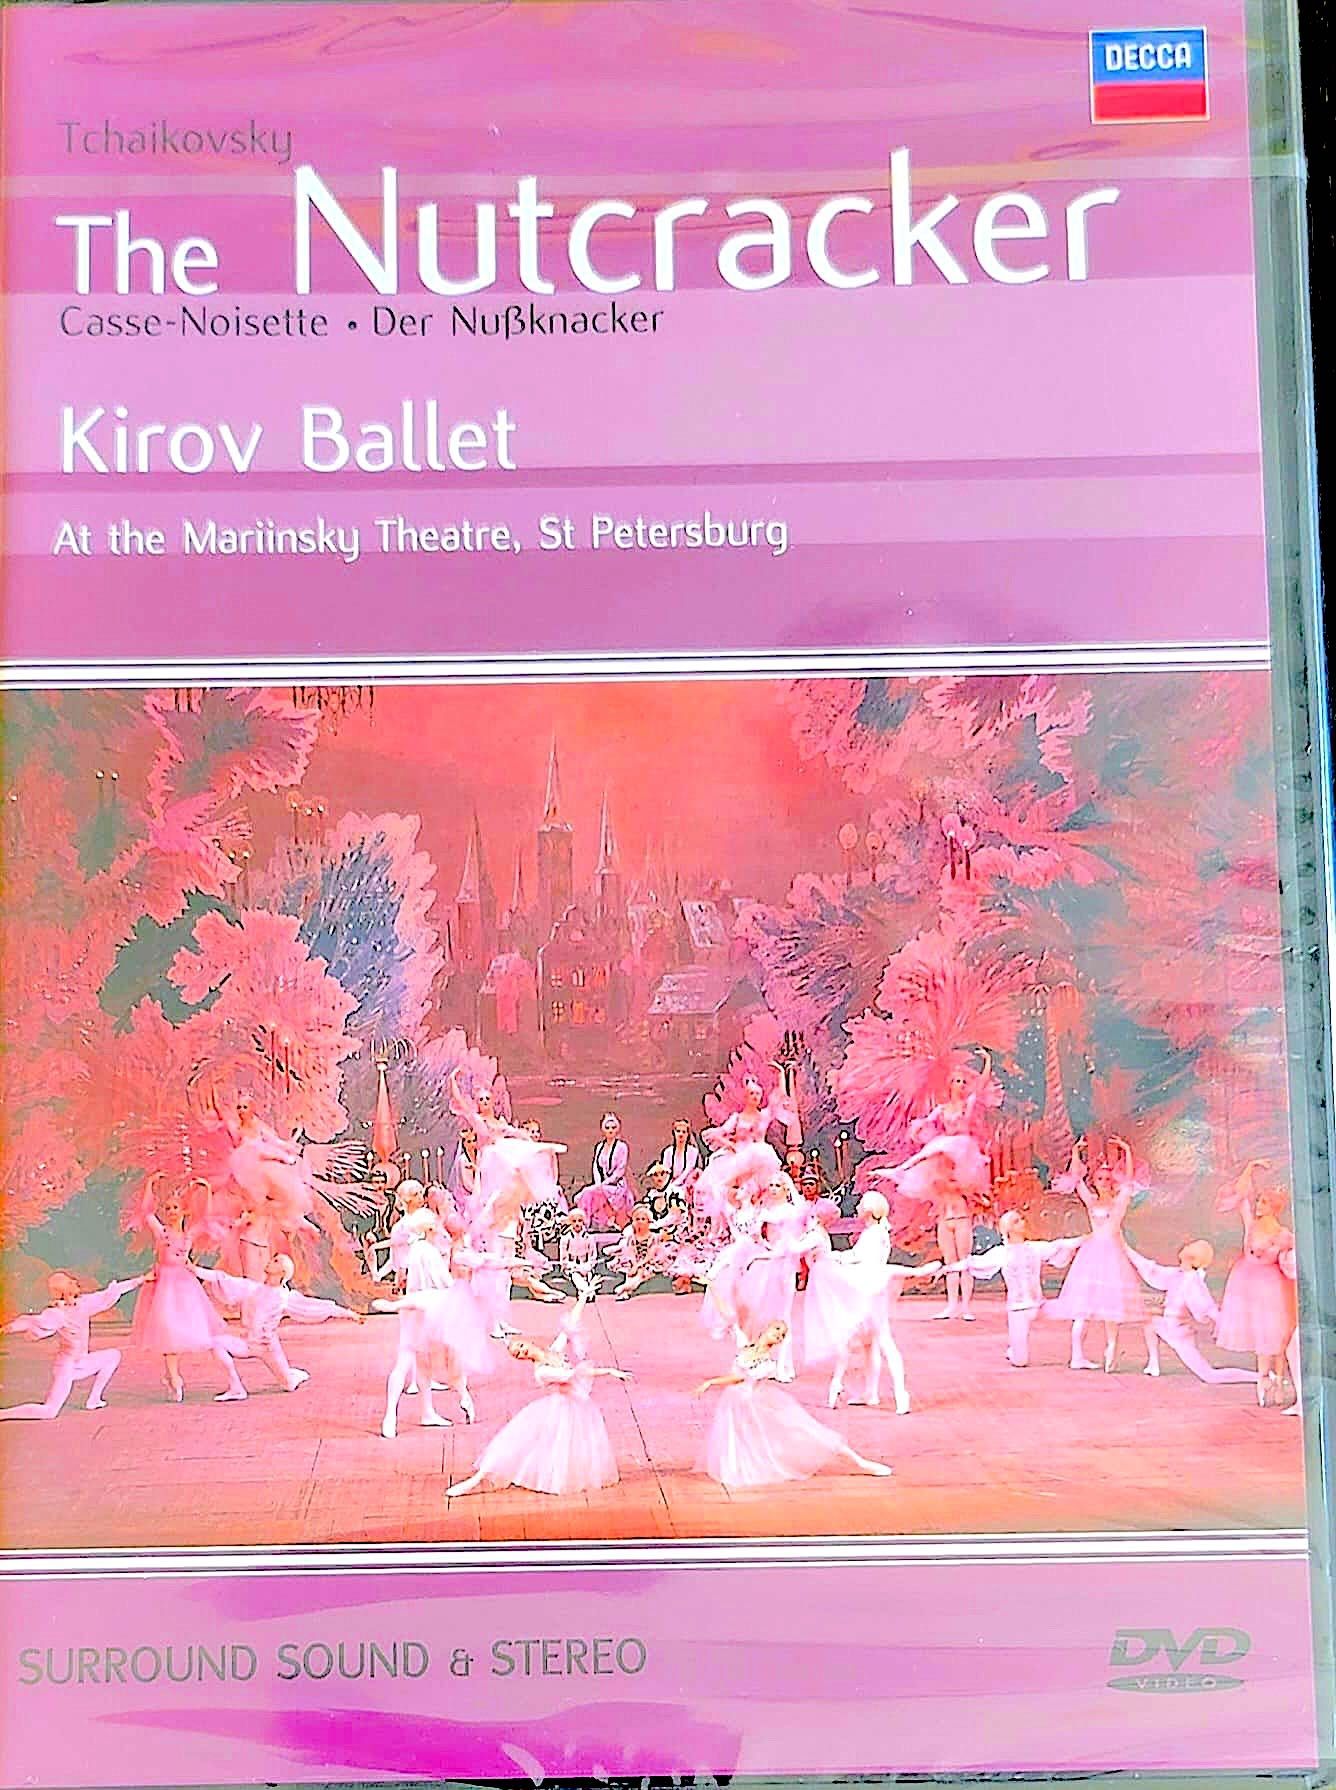 Balet, Russain Magic Ballet, 3 DVD de excepție